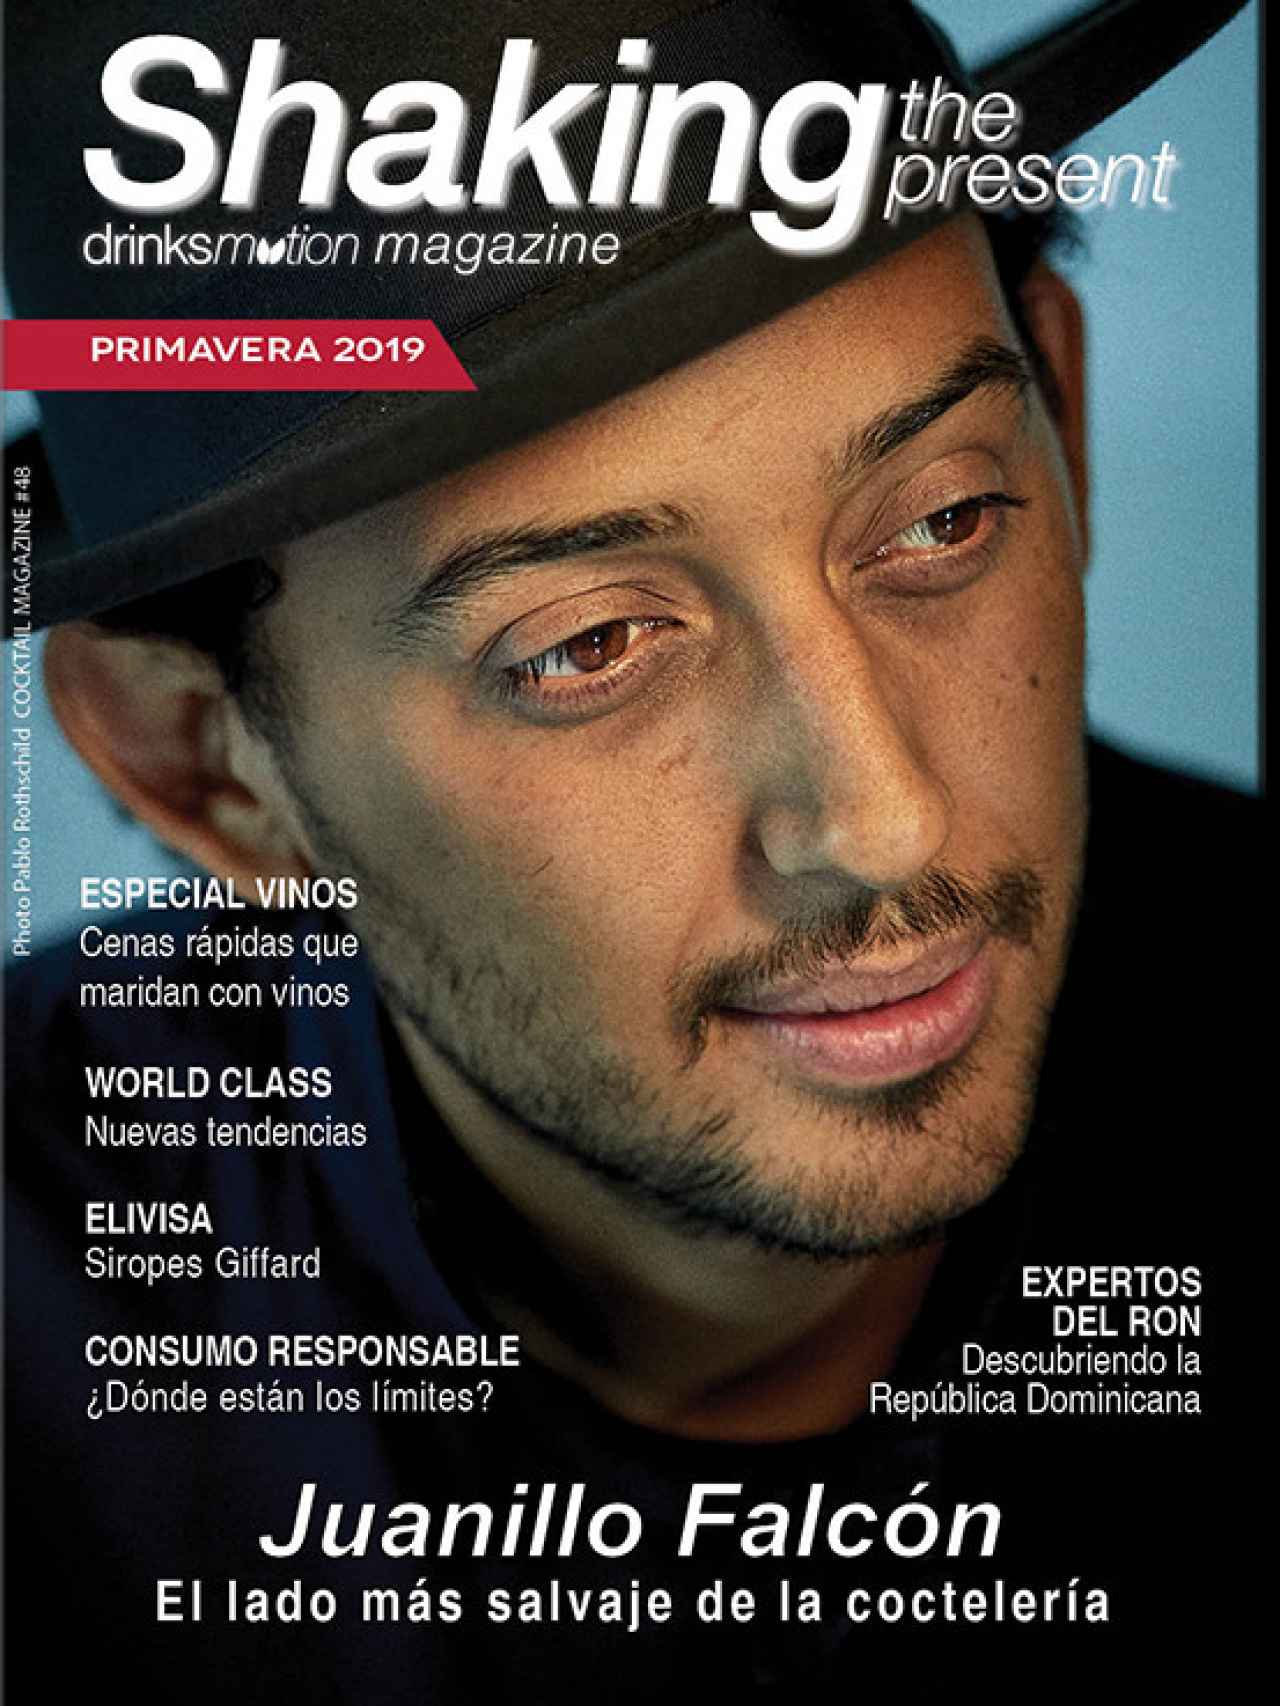 'Juanillo' Falcón para la portada de la revista Drinksmotion